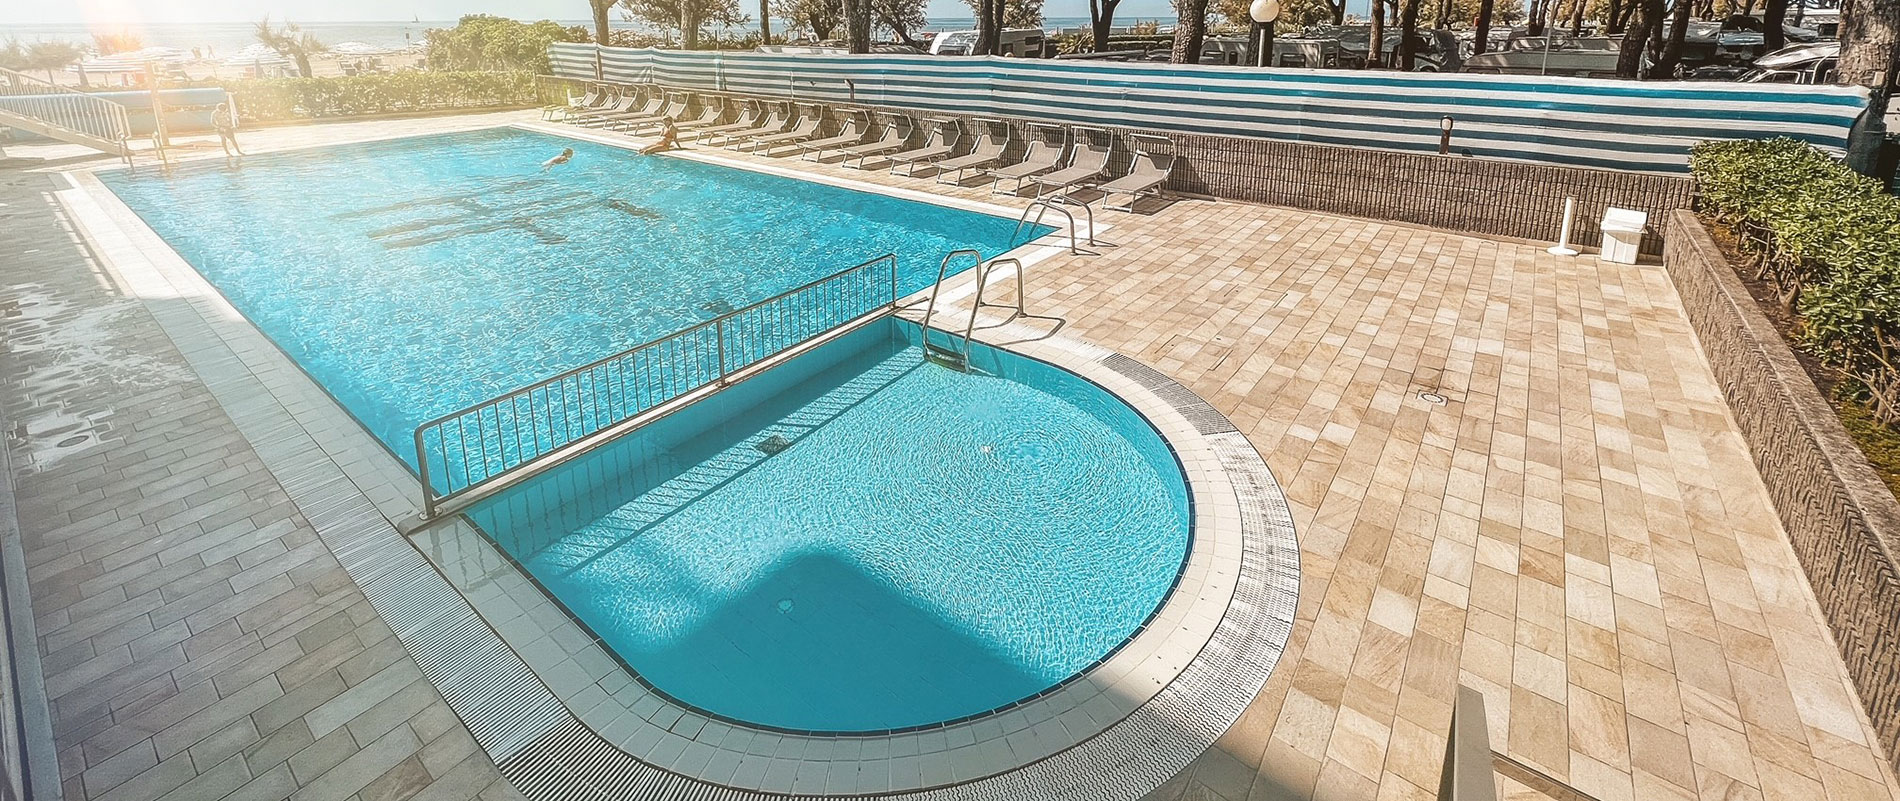 Hotel Fenix : Albergo con piscina fronte mare : Cavallino - Venezia